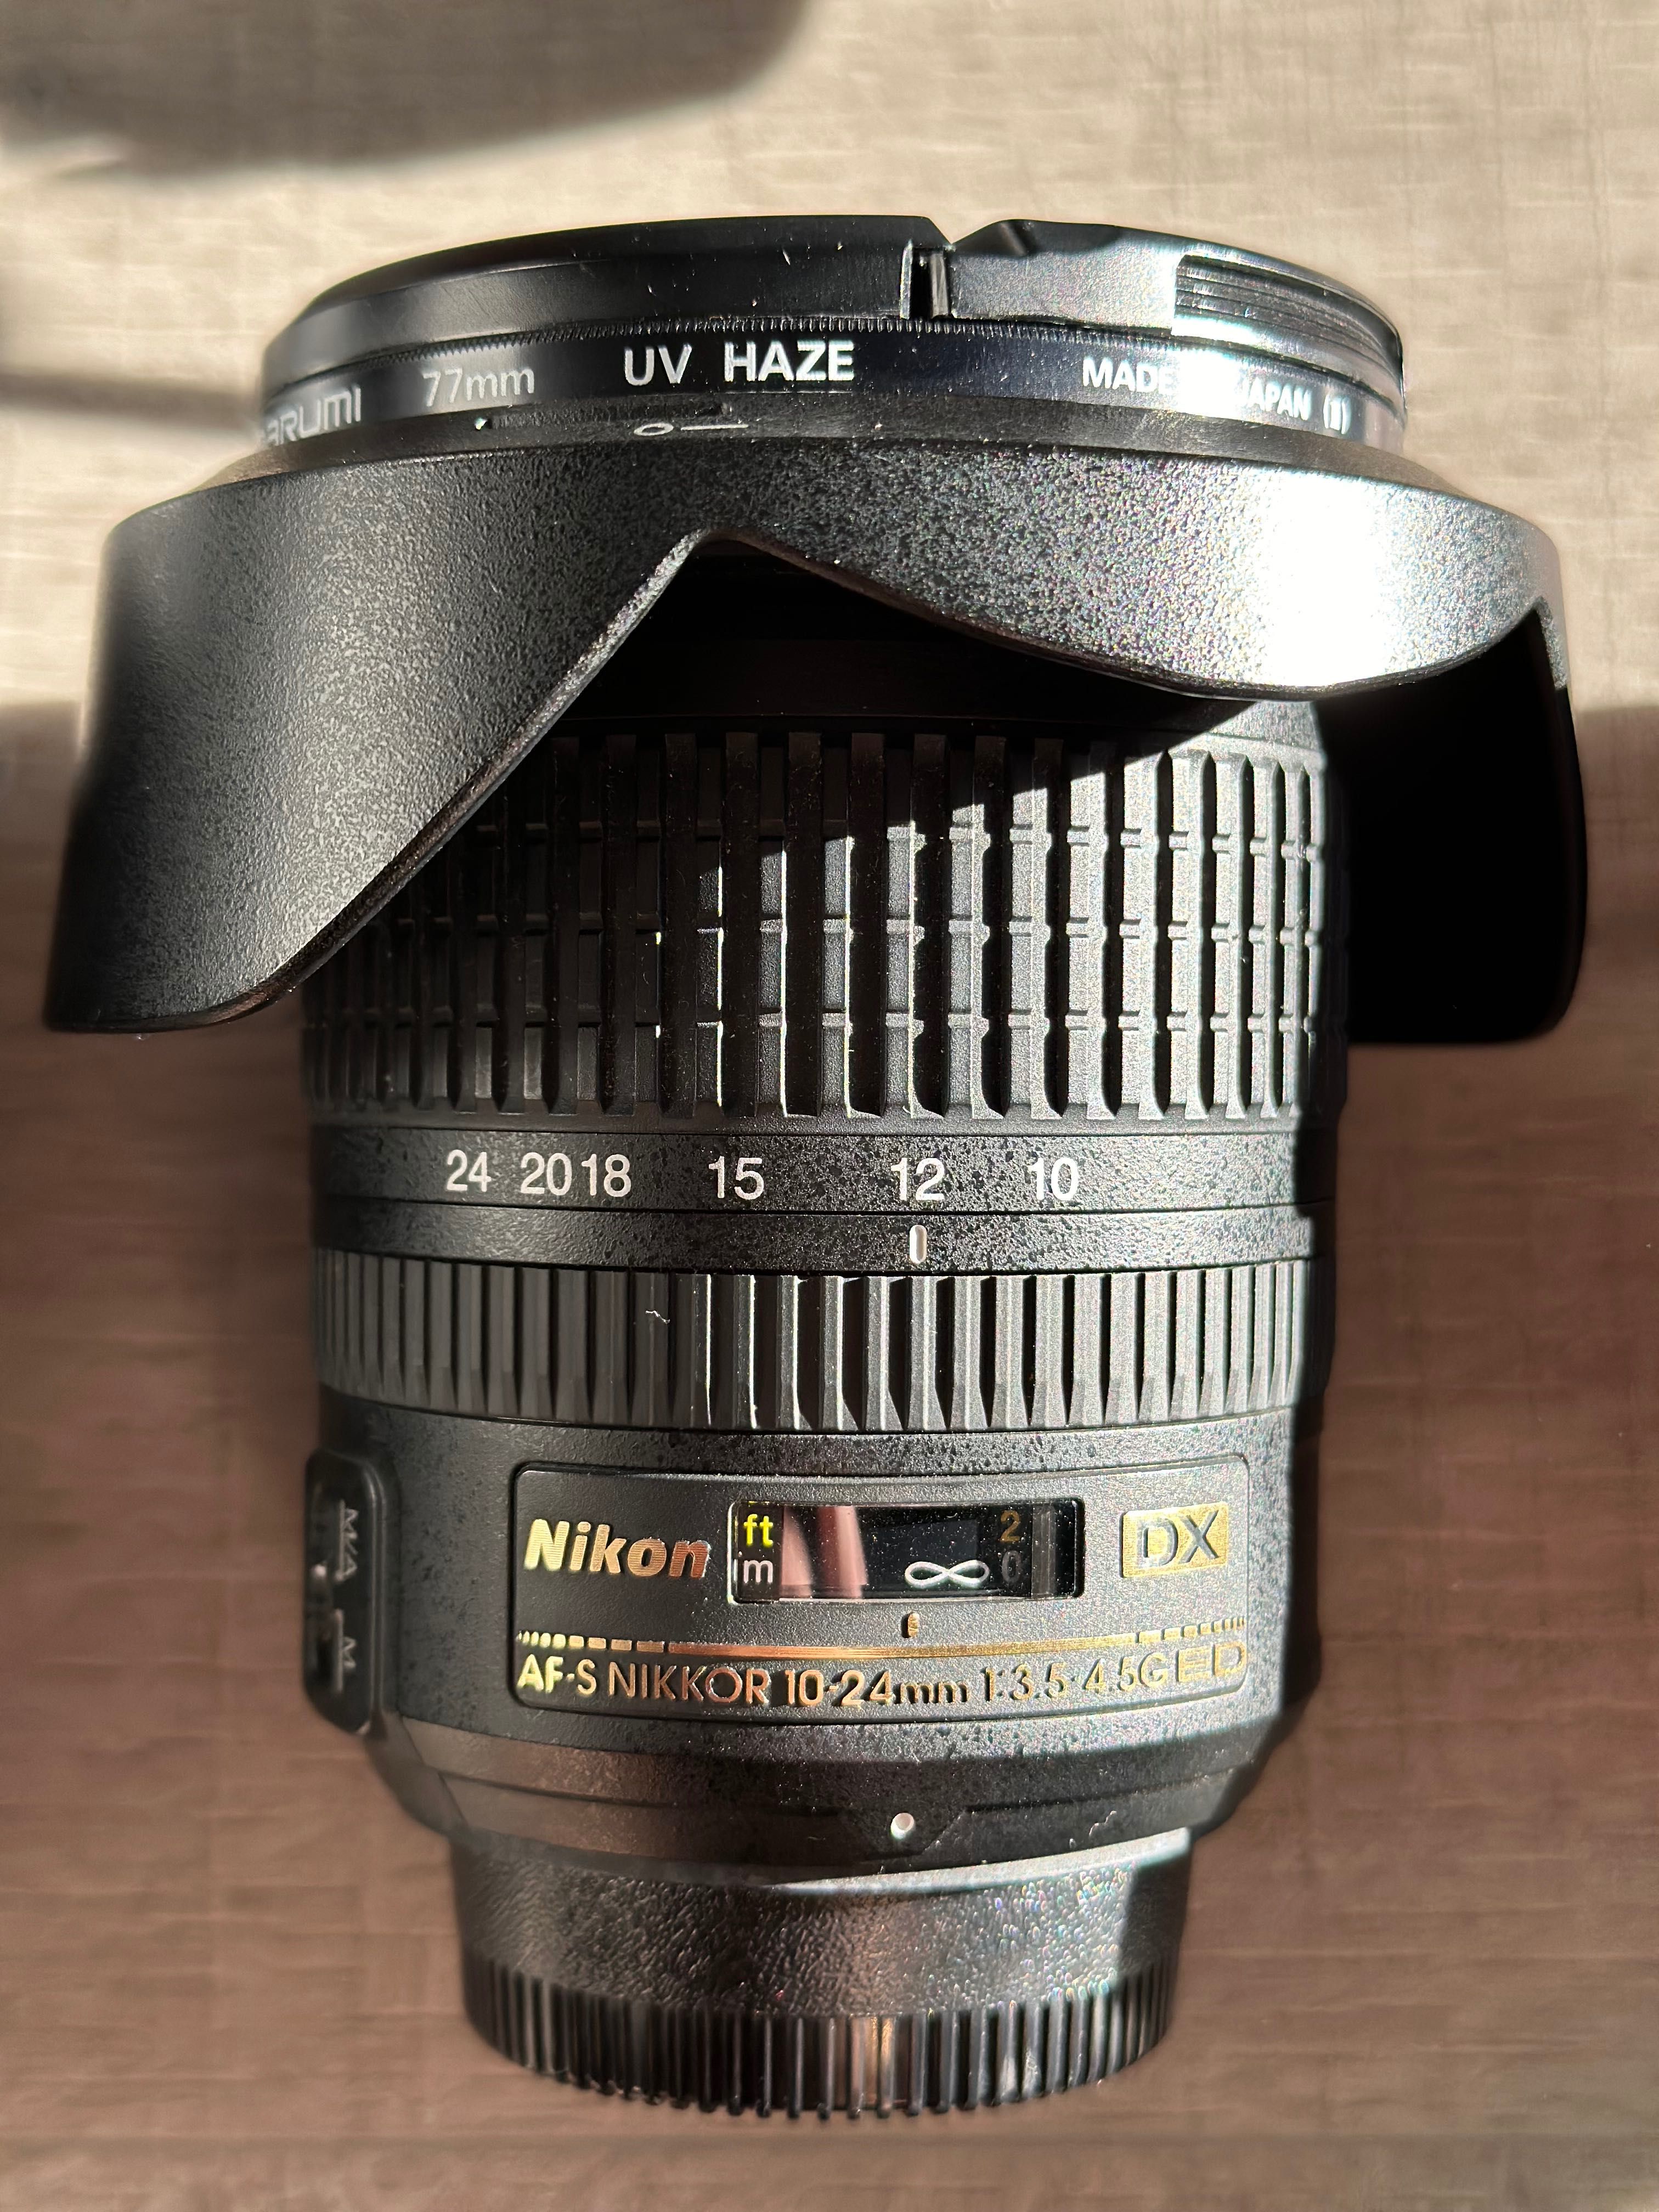 Sprzęt fotograficzny Nikon D90, lustrzanka w zestawie z obiektywami